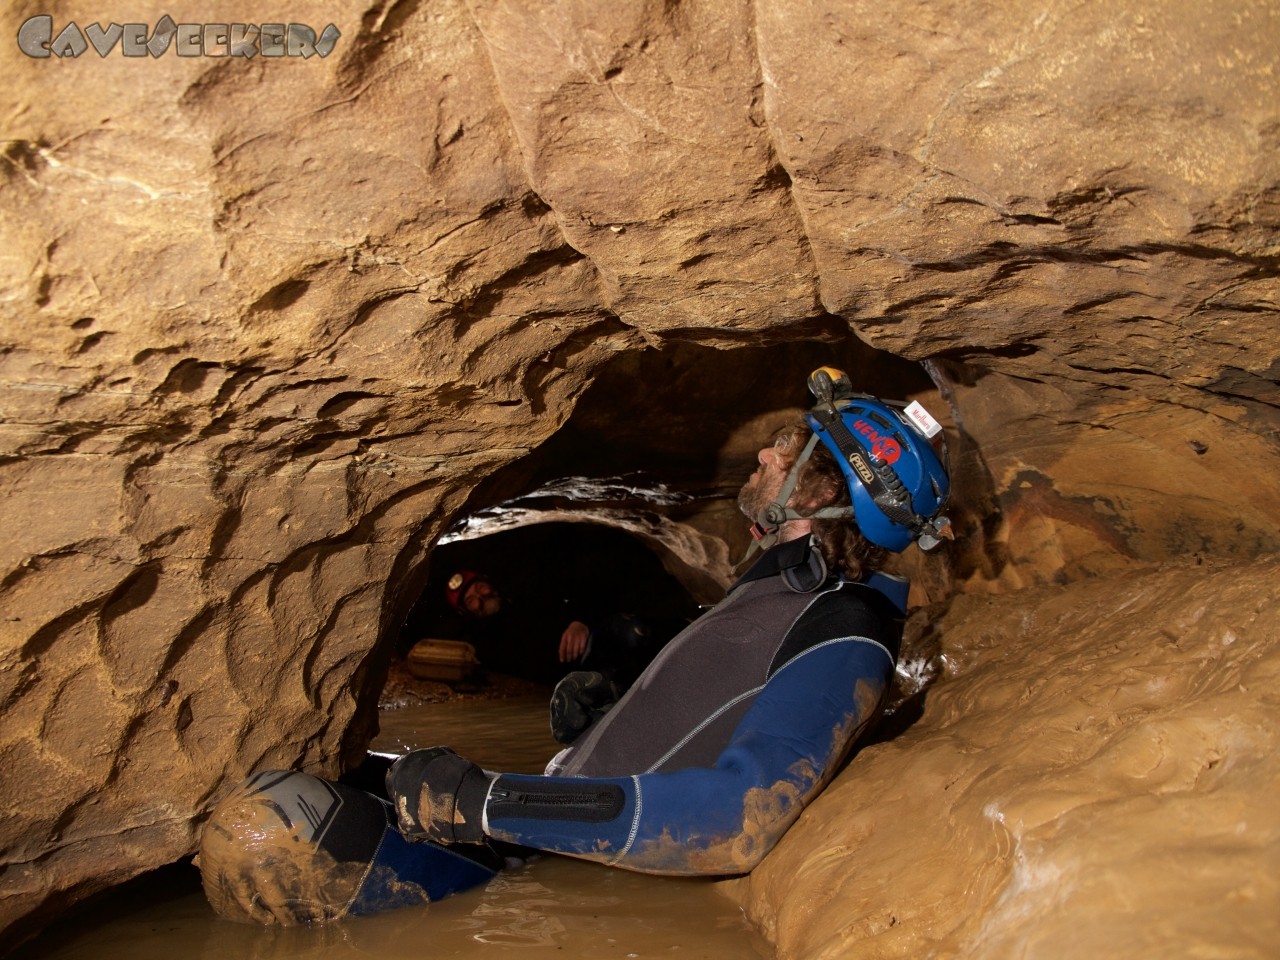 Flüchtlingshöhle - Die Pracht der Höhle lädt zum Verweilen ein. Die unteren Körperregionen werden ausreichend gekühlt.